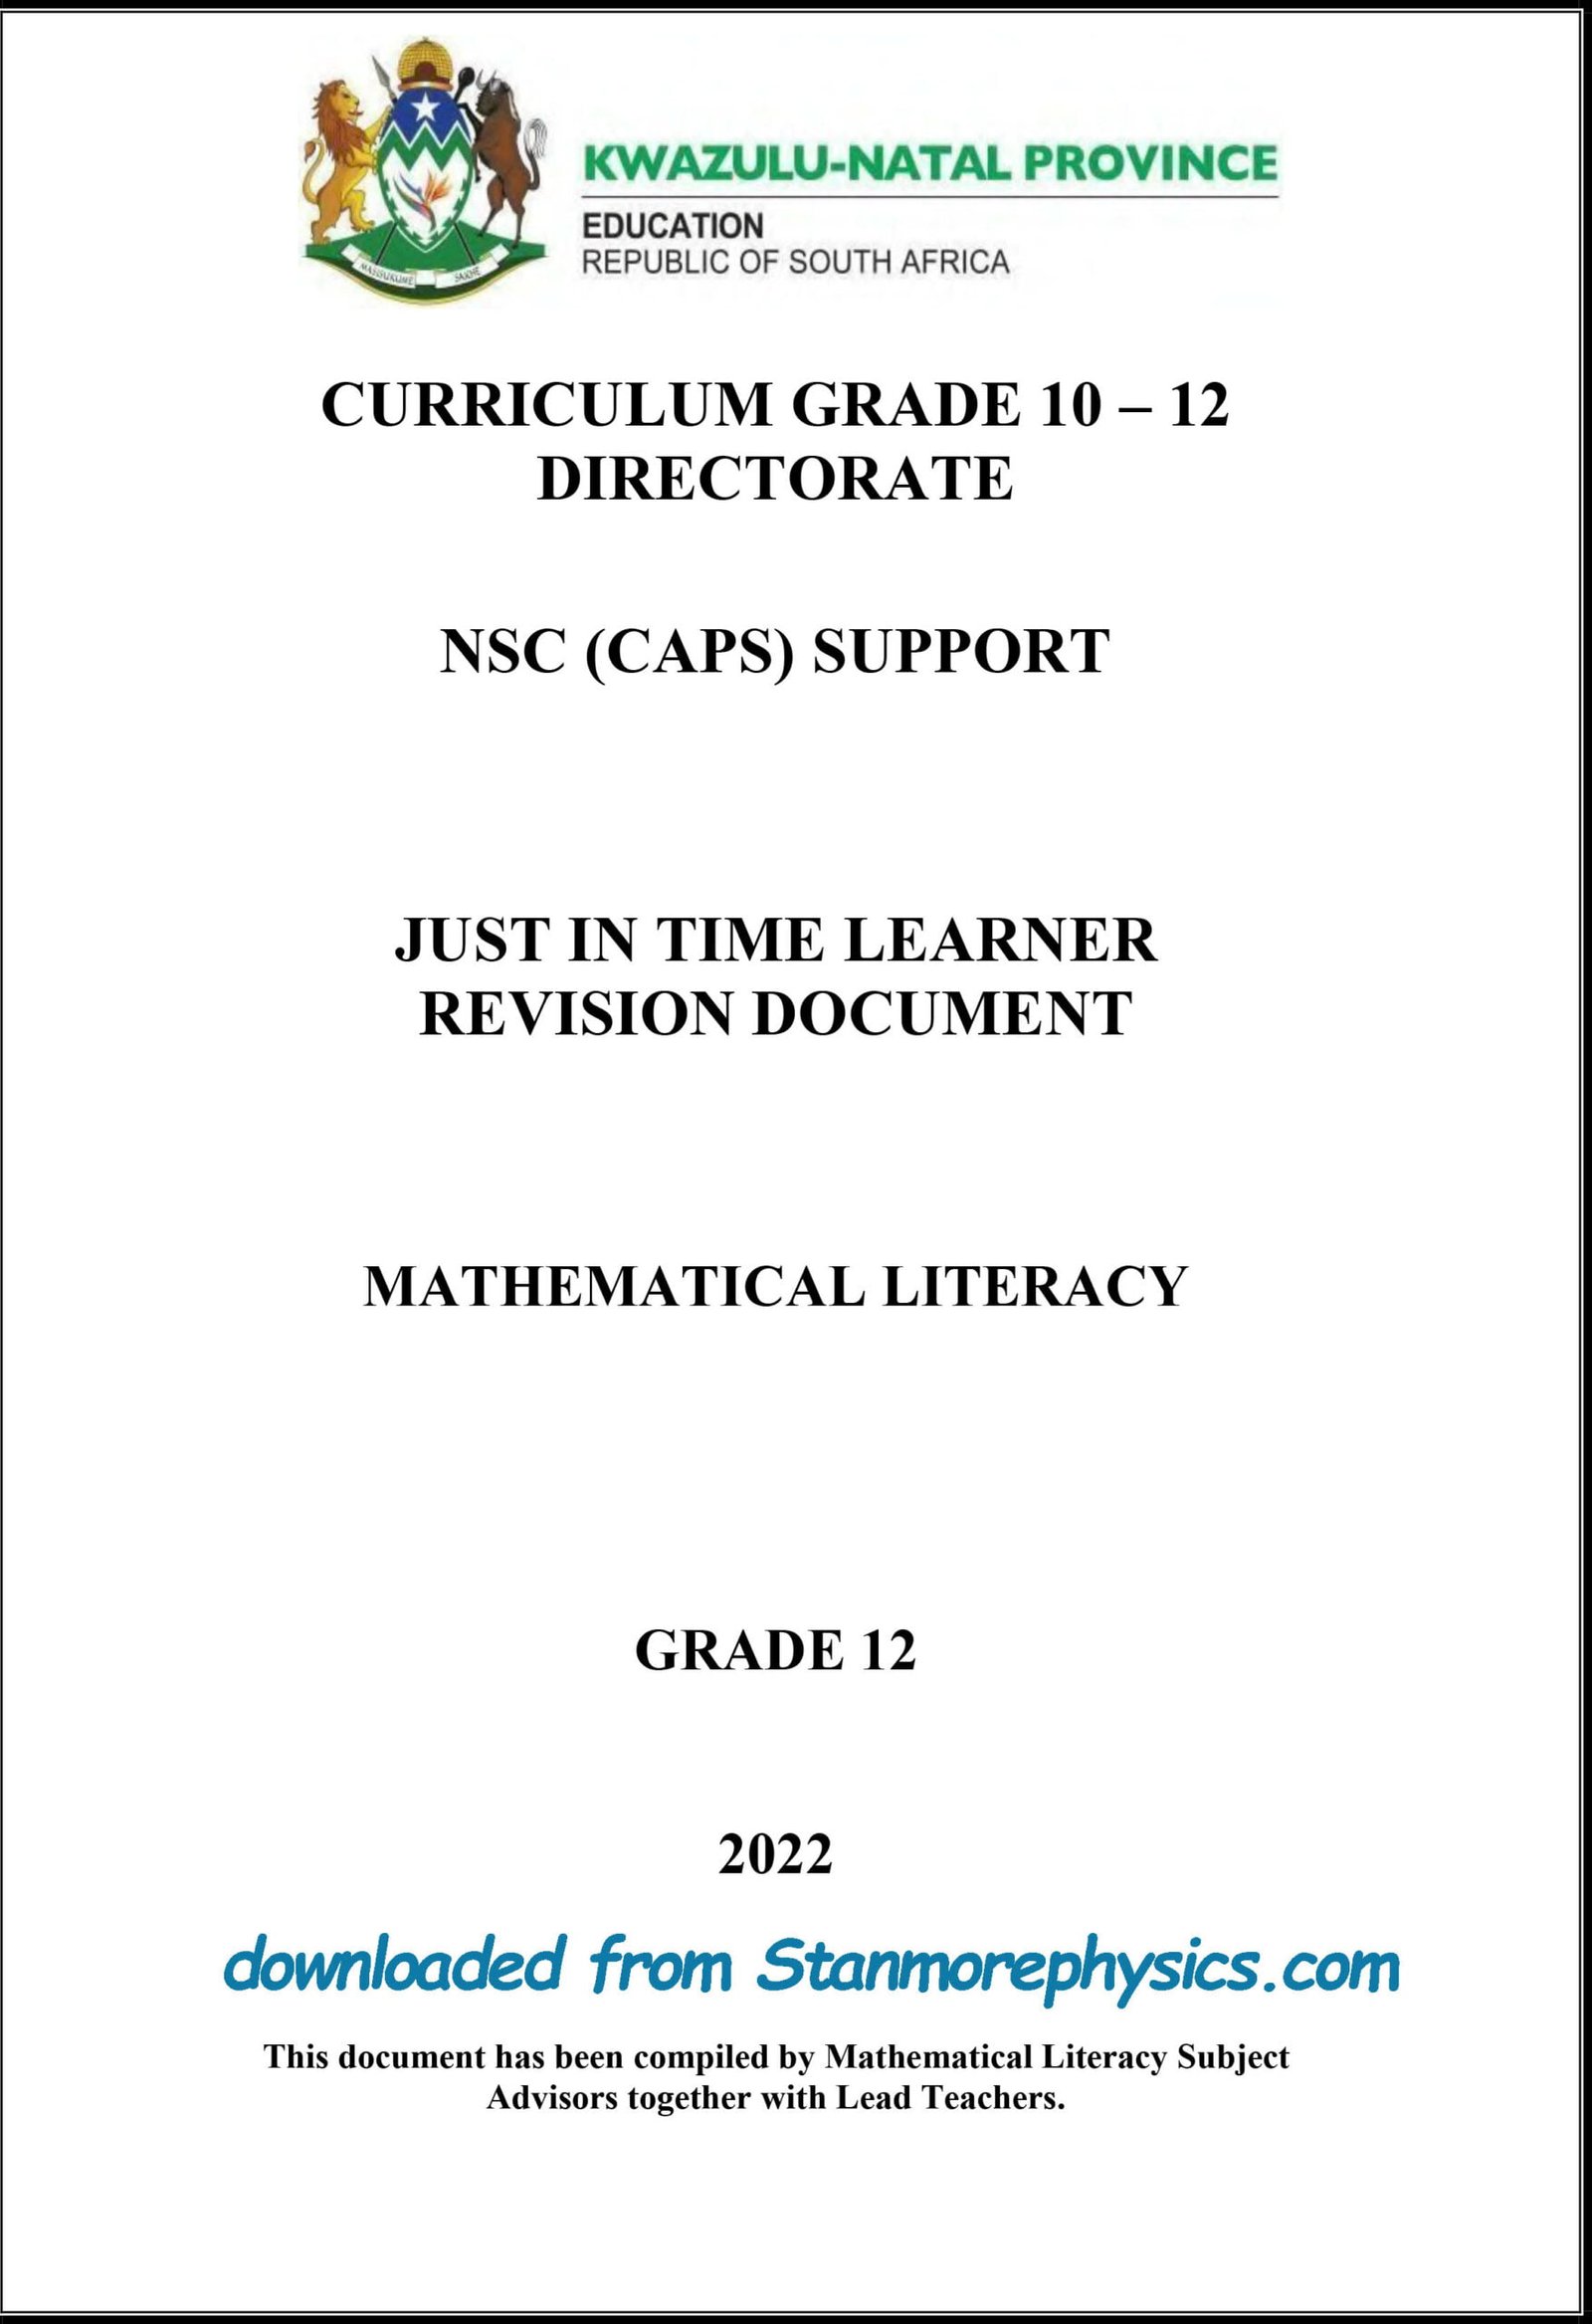 maths literacy grade 12 assignment 2021 term 3